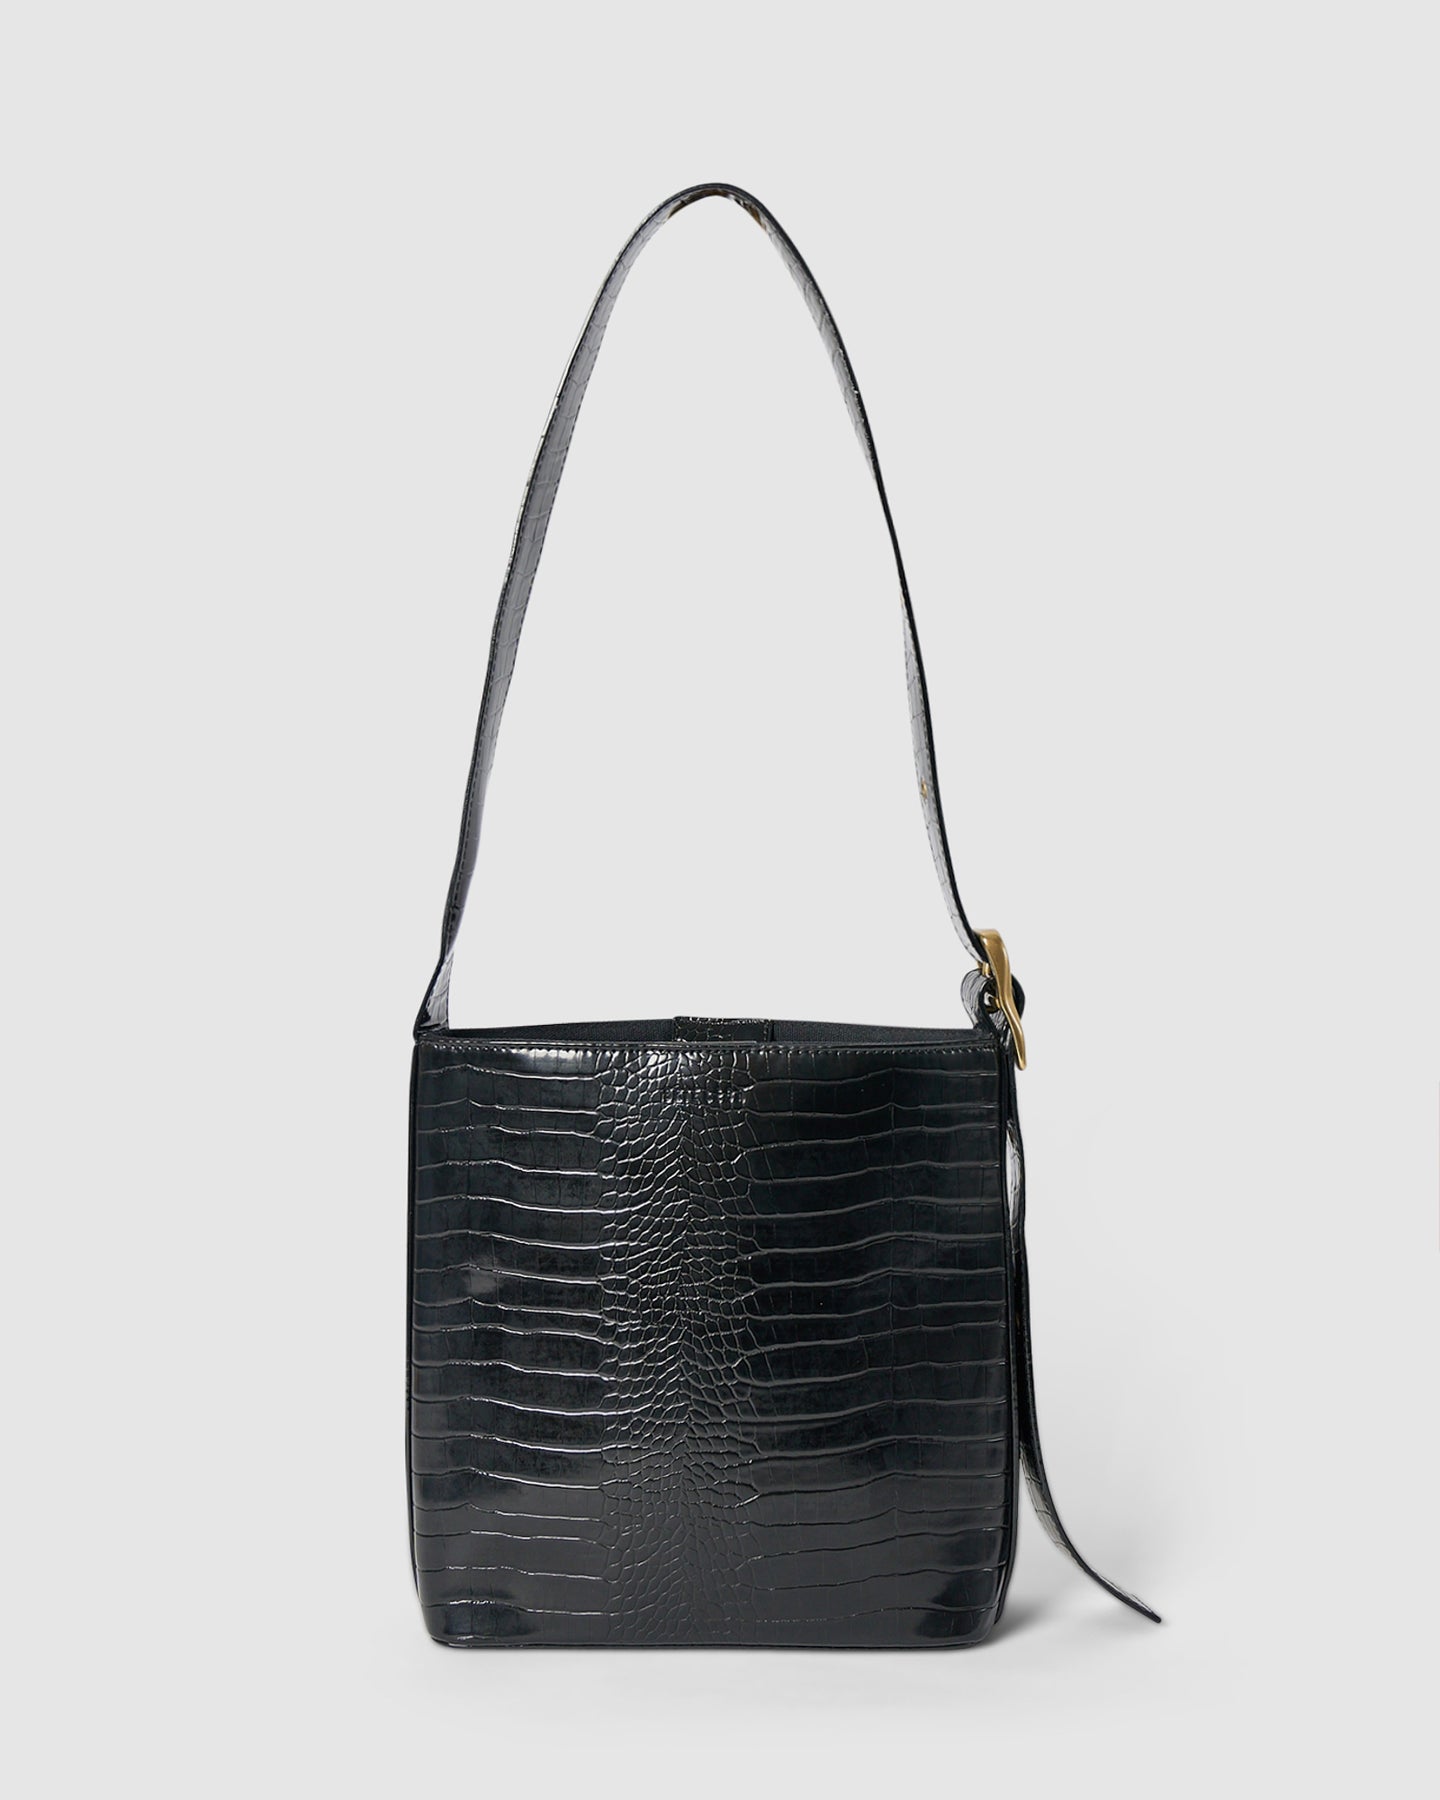 Bucket Bag by Boejack Black